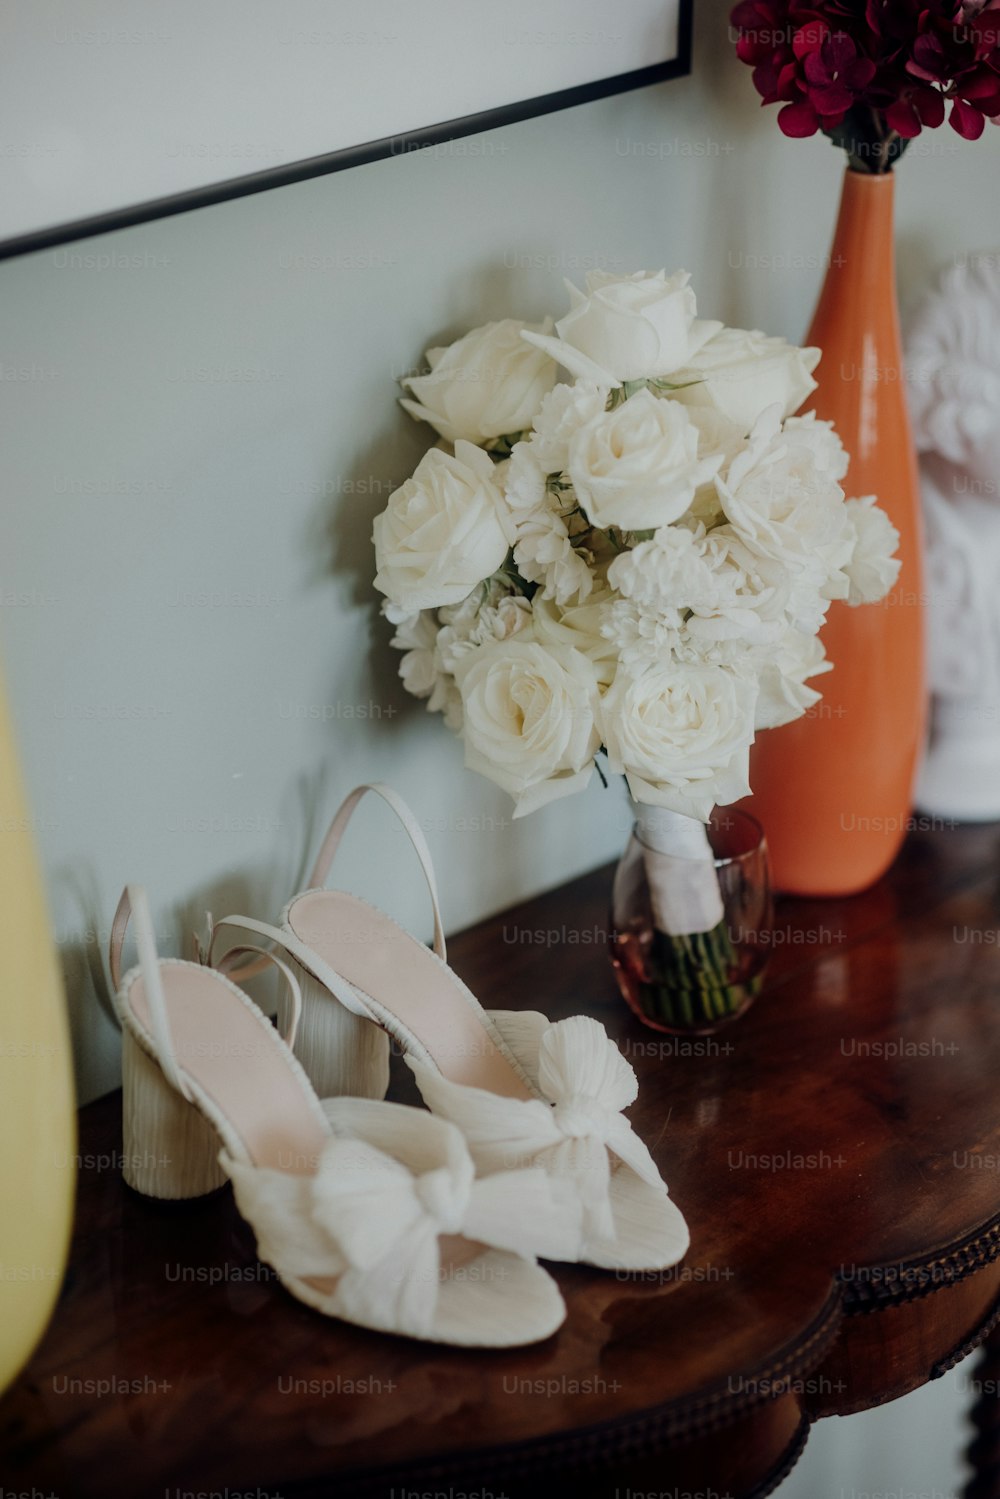 un paio di scarpe bianche sedute su un tavolo accanto a un vaso di fiori